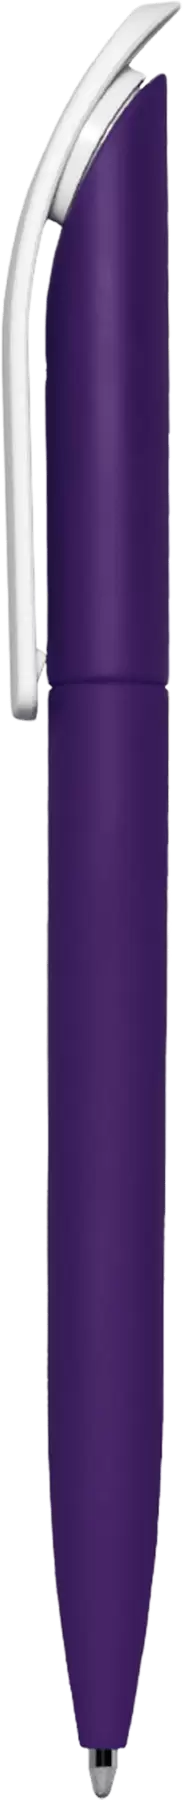 Ручка VIVALDI SOFT Фиолетовая 1335-11